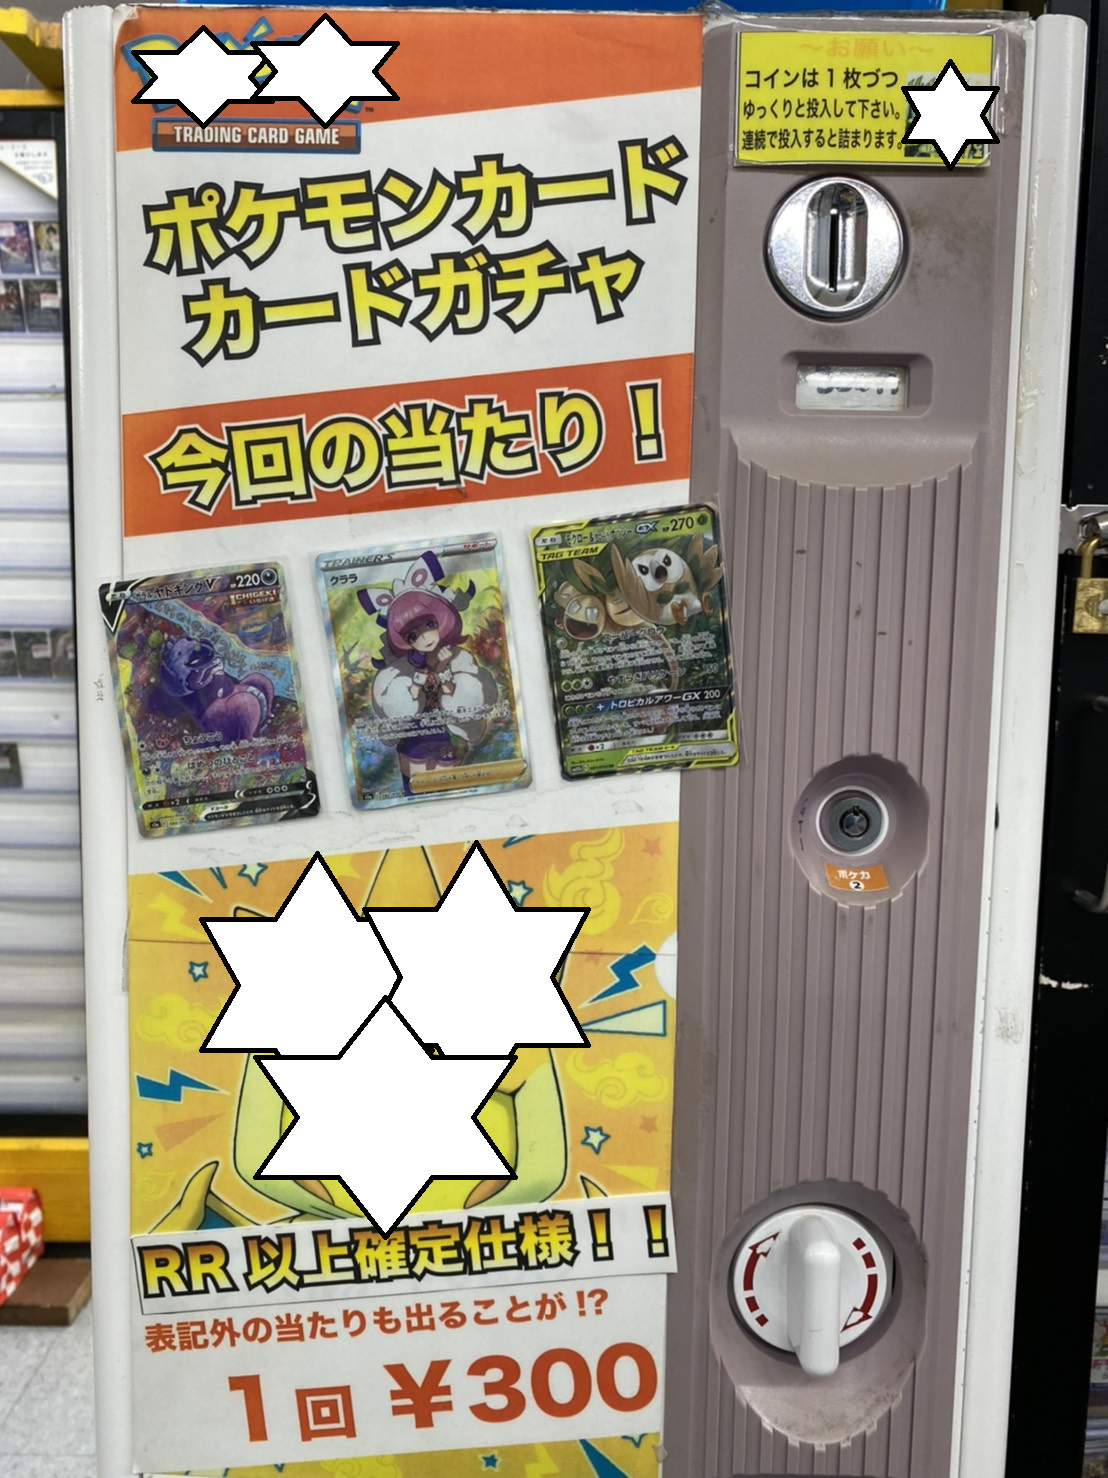 鈴鹿店 3 23 ポケモンカードゲーム ゴットンガチャ更新のお知らせです 万代書店 三重総合